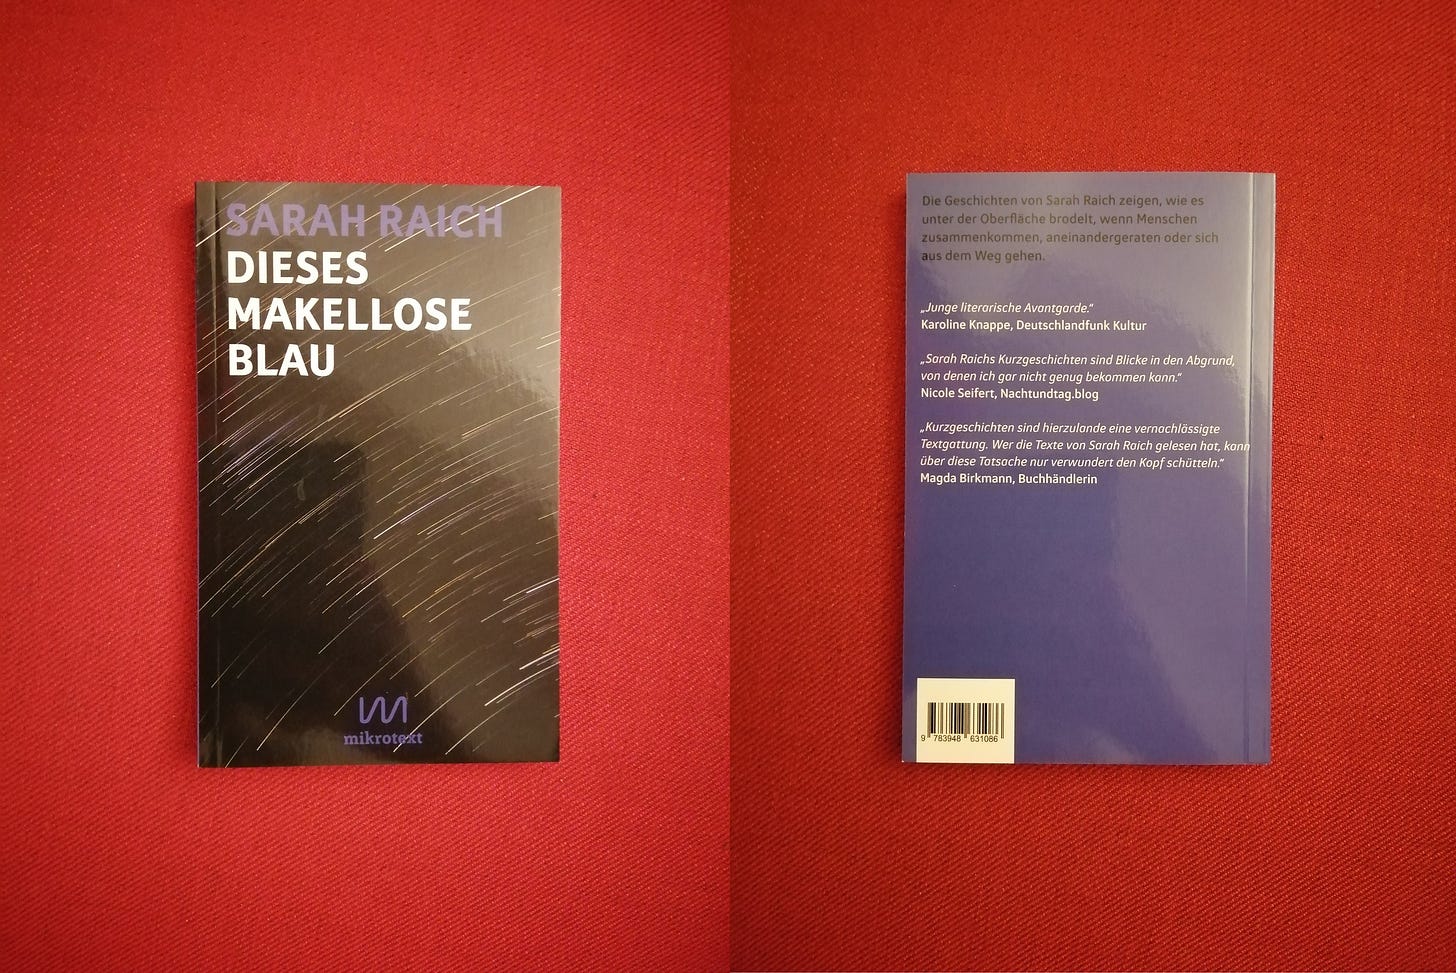 Vor rotem Hintergrund sieht man links das Cover und rechts die Rückseite von Sarahs Buch. Das Cover ist schwarz mit vielen weißen Schlieren, die wie Sternschnuppen aussehen, die Rückseite ist blau mit weißer Schrift.